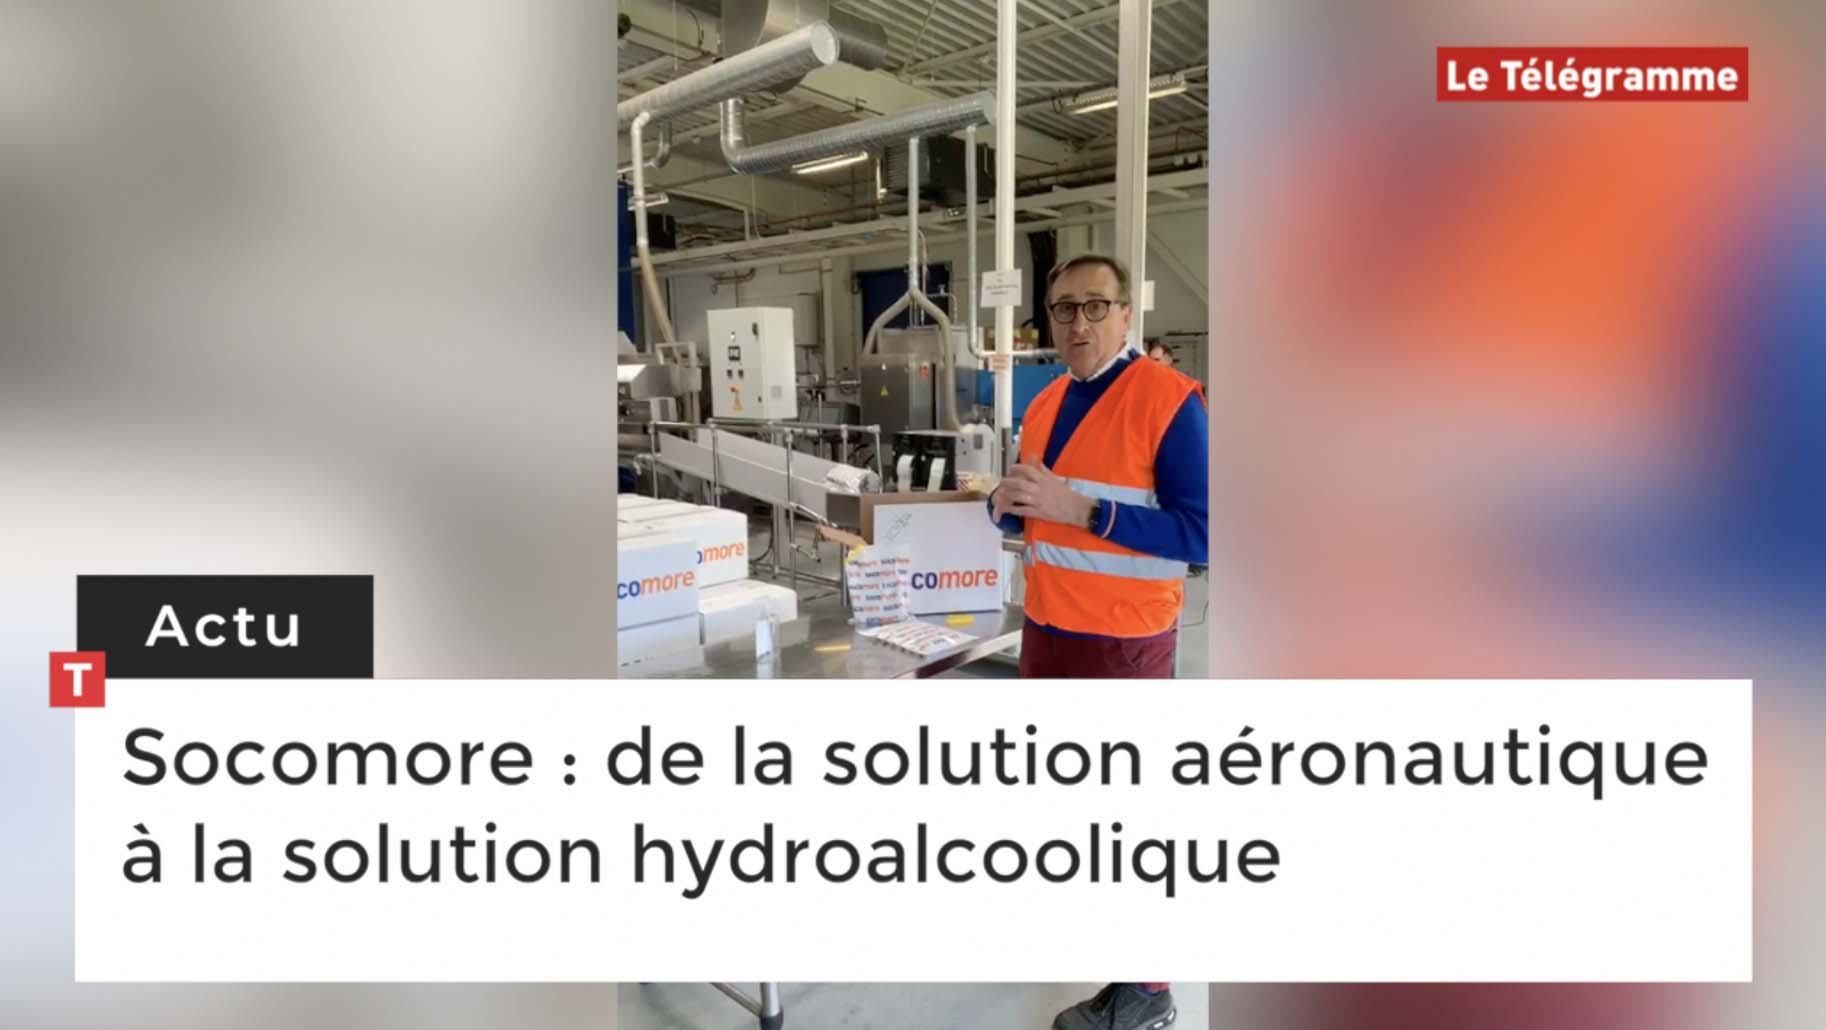 Socomore : de la solution aéronautique à la solution hydroalcoolique (Le Télégramme)